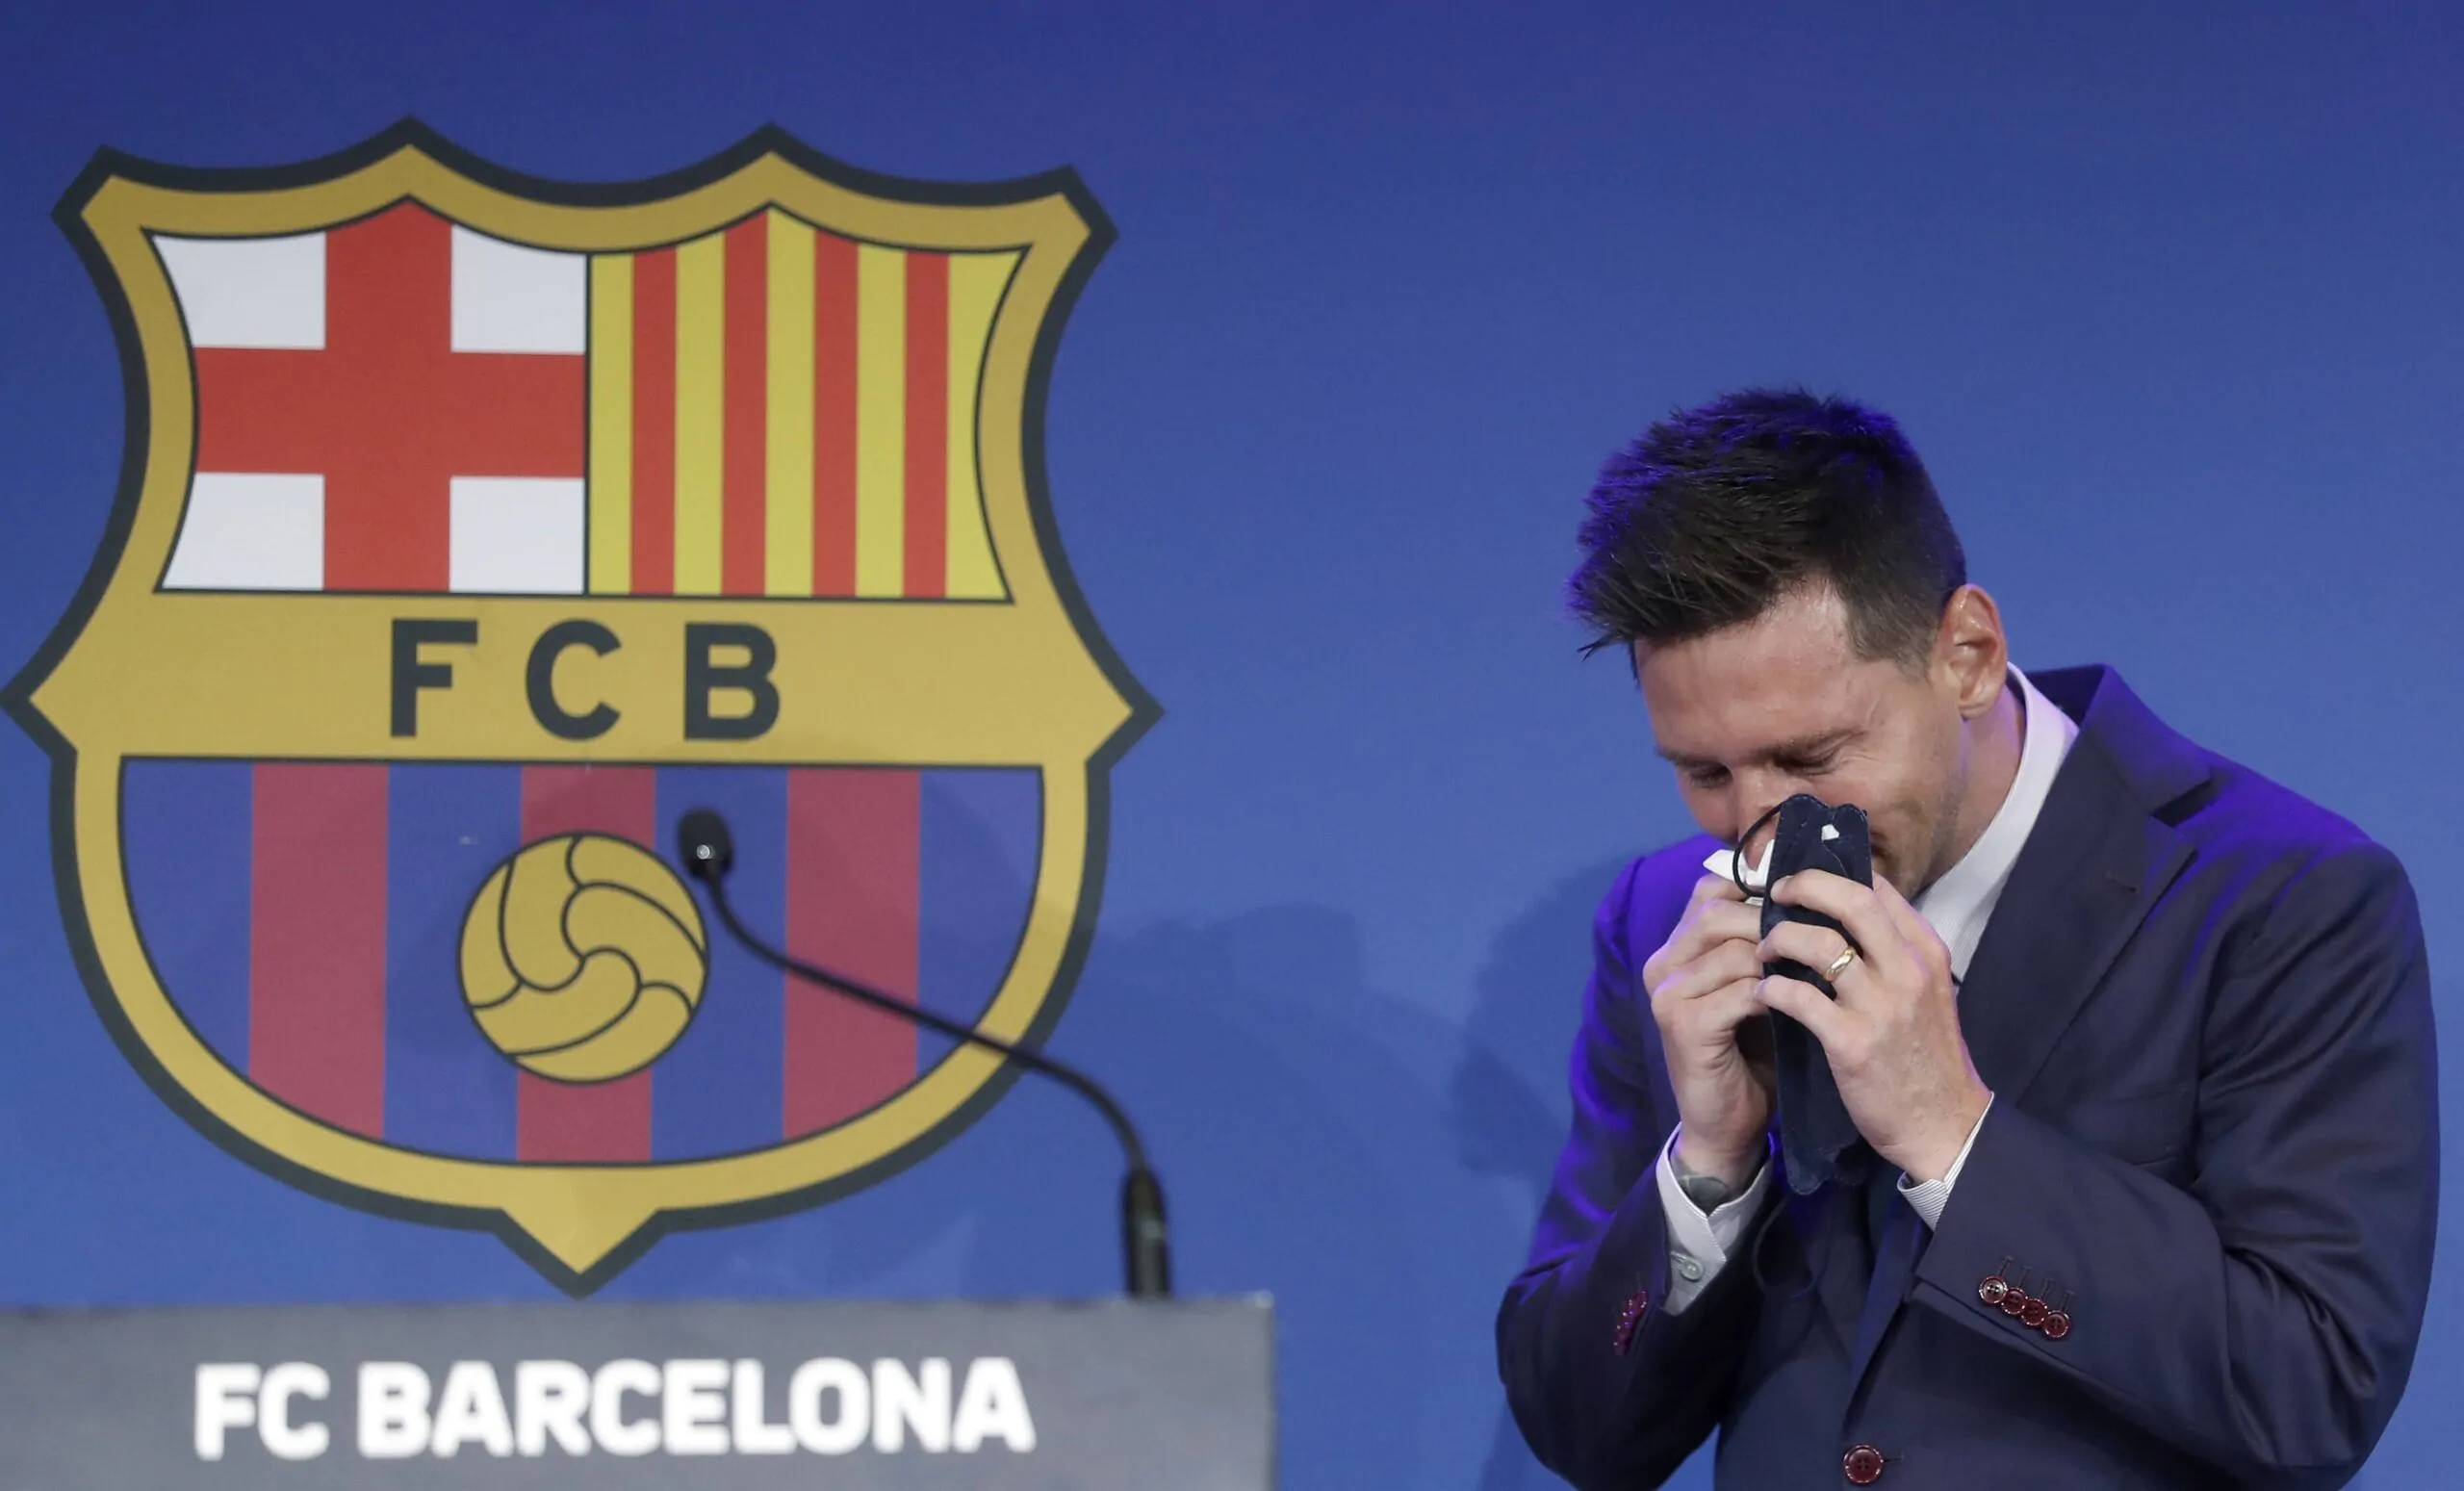 Nessuna alternativa: il motivo della separazione tra Messi e il Barcellona